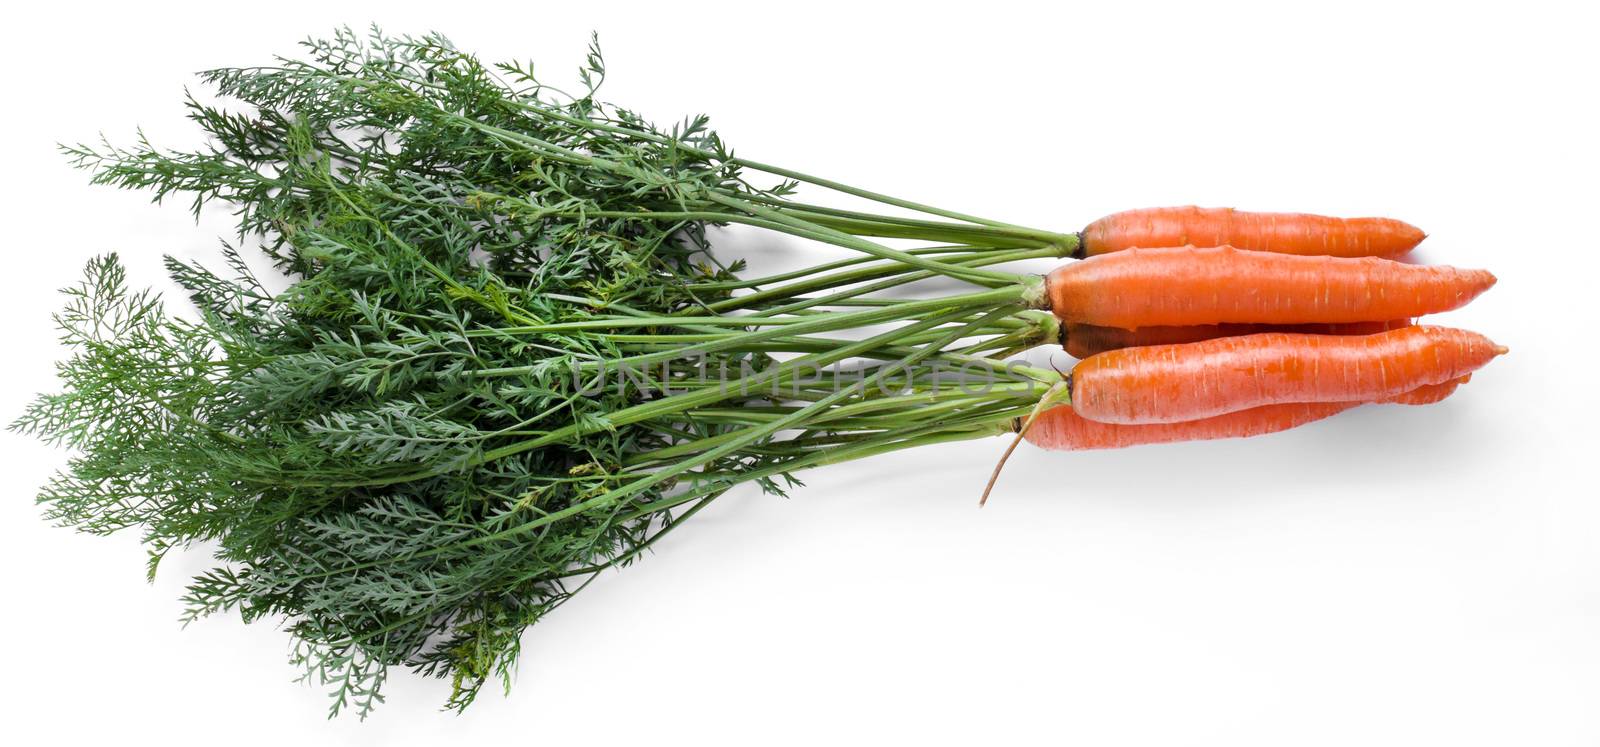 Delicious carrot by rufatjumali